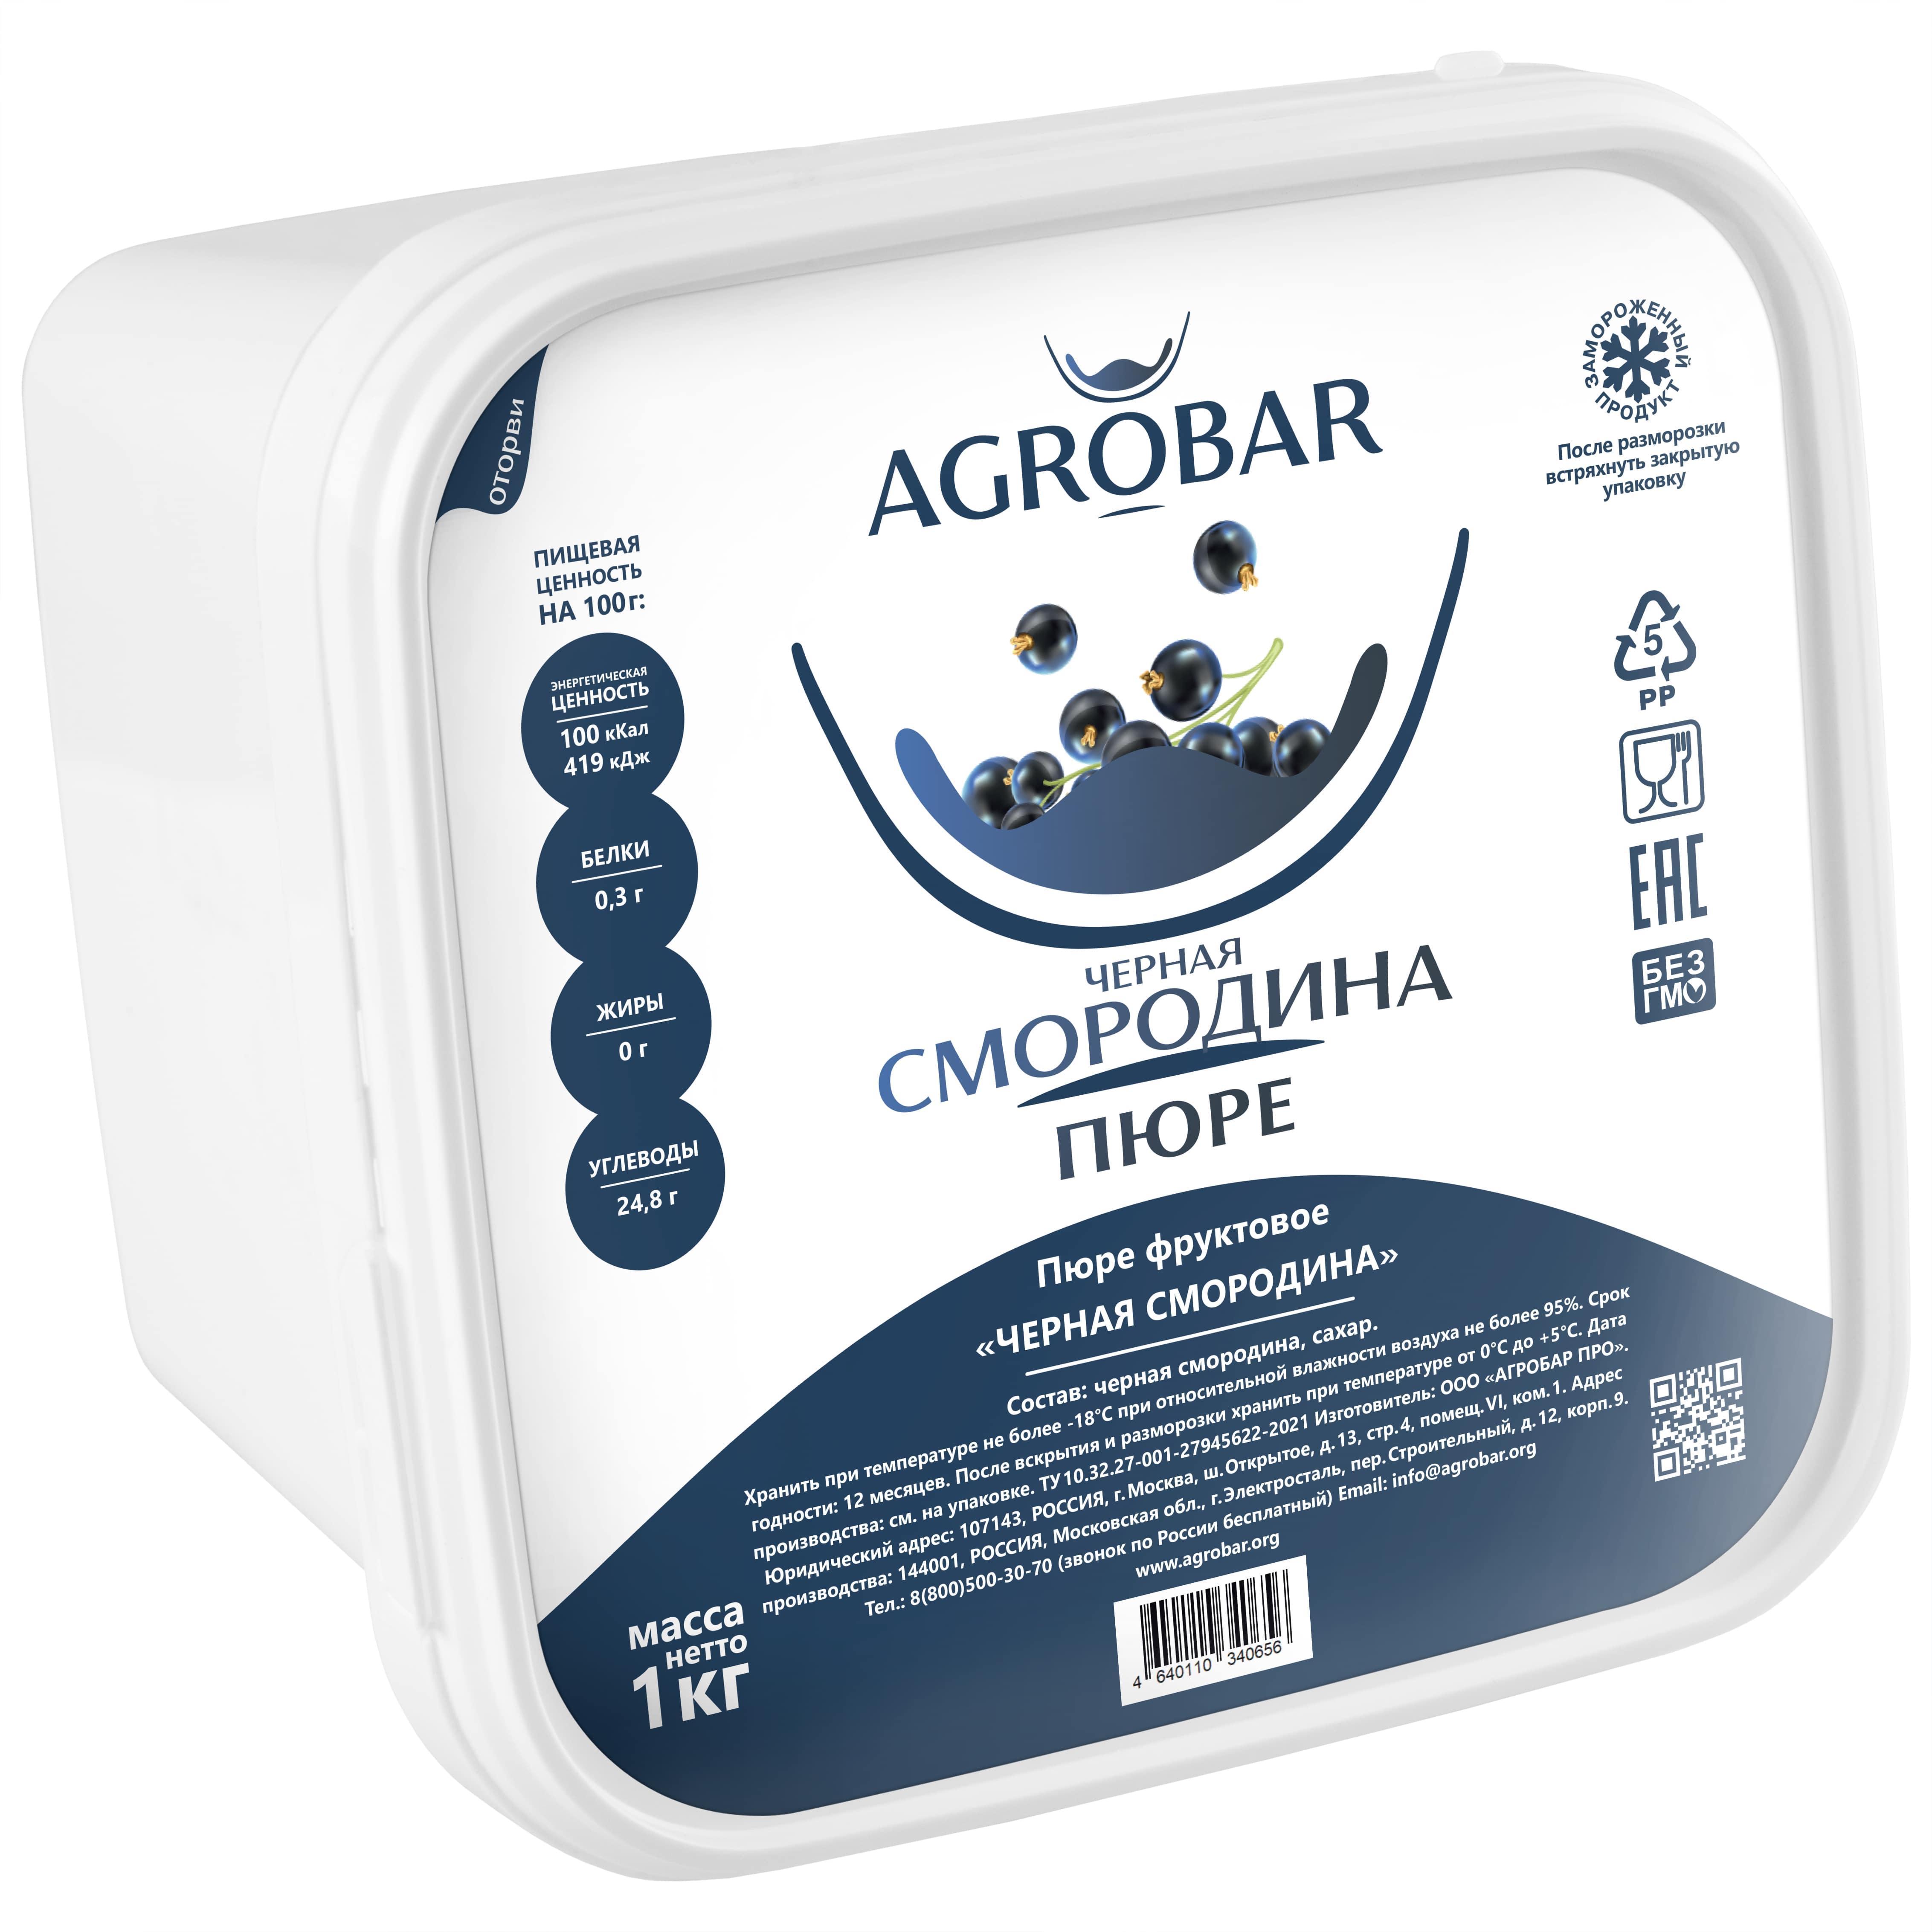 Пюре AGROBAR Черная Смородина, 1 кг, пластиковый контейнер